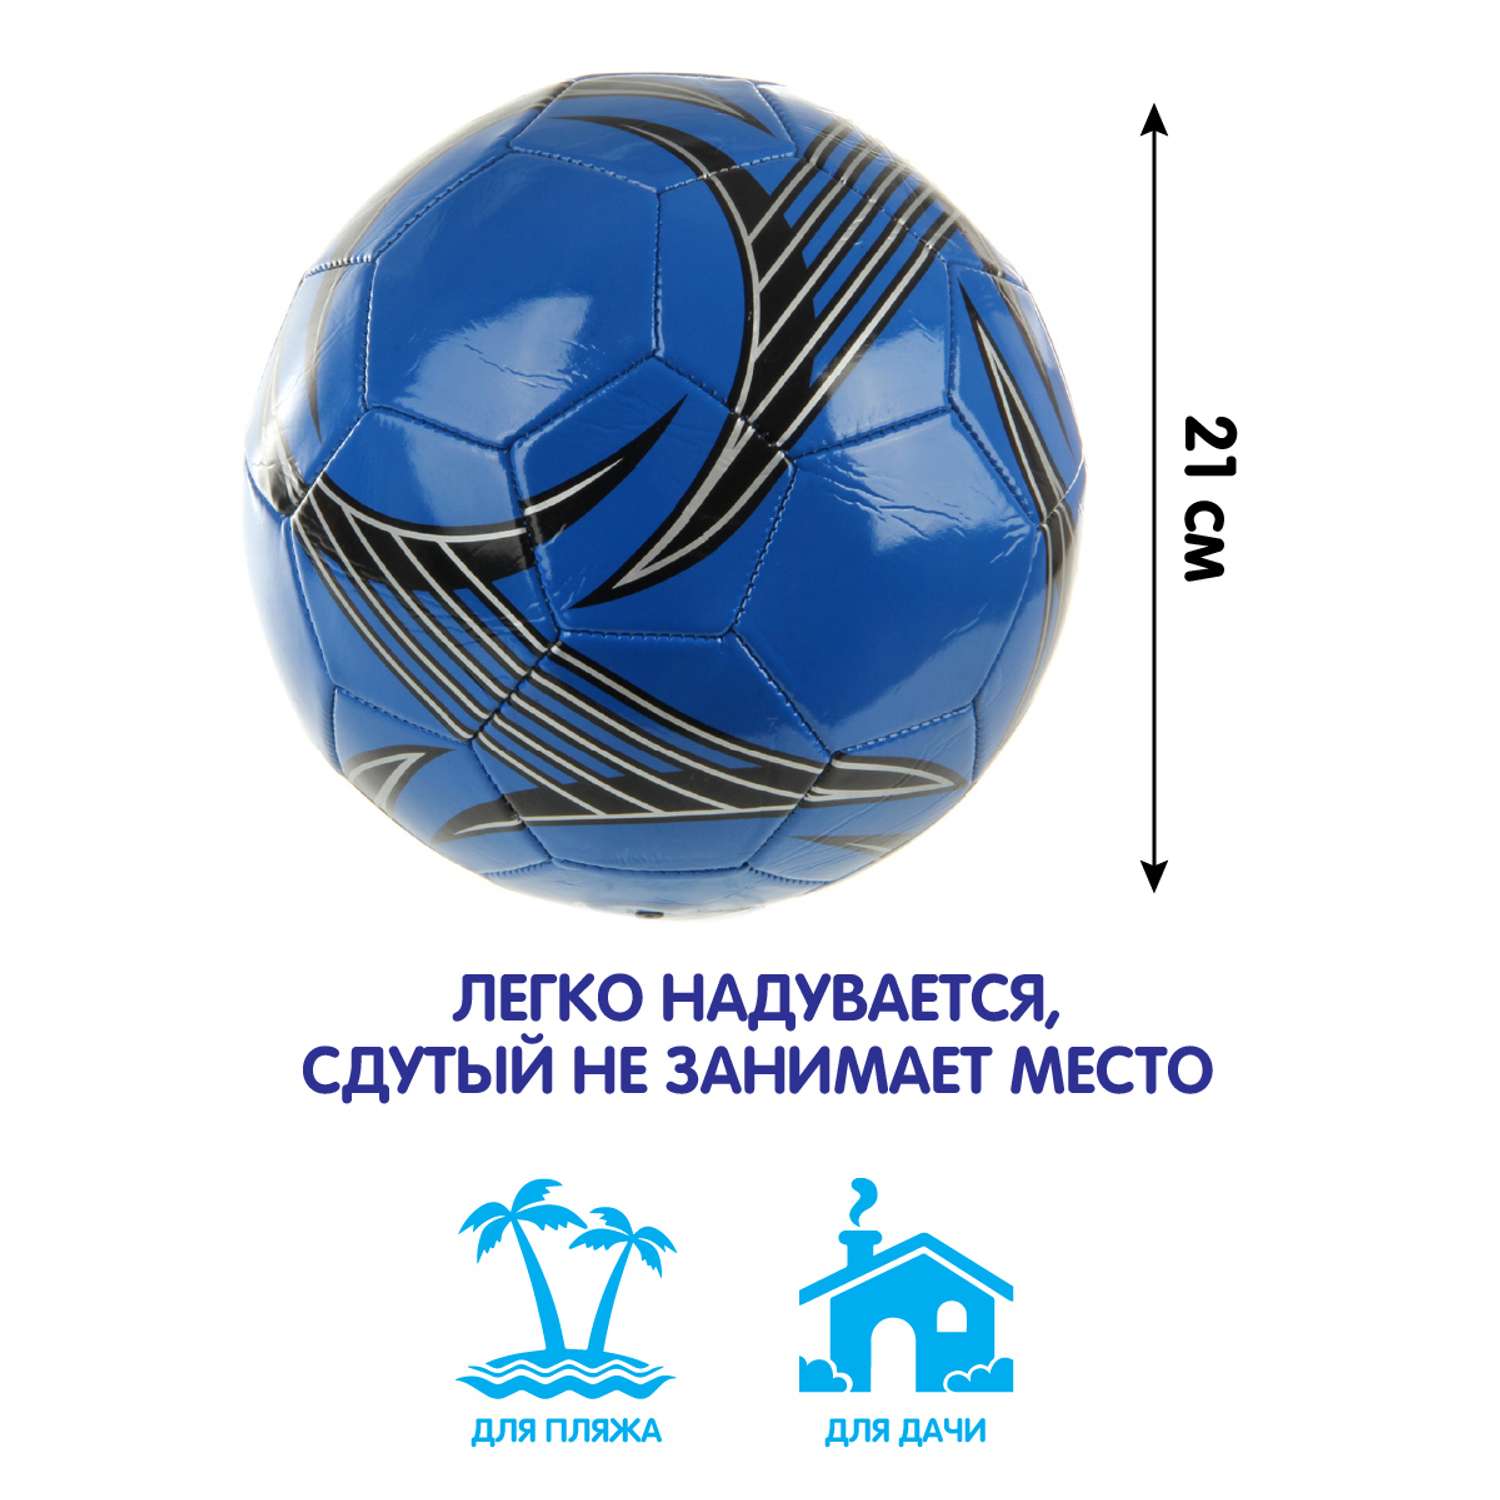 Мяч Veld Co футбольный 22 см - фото 2